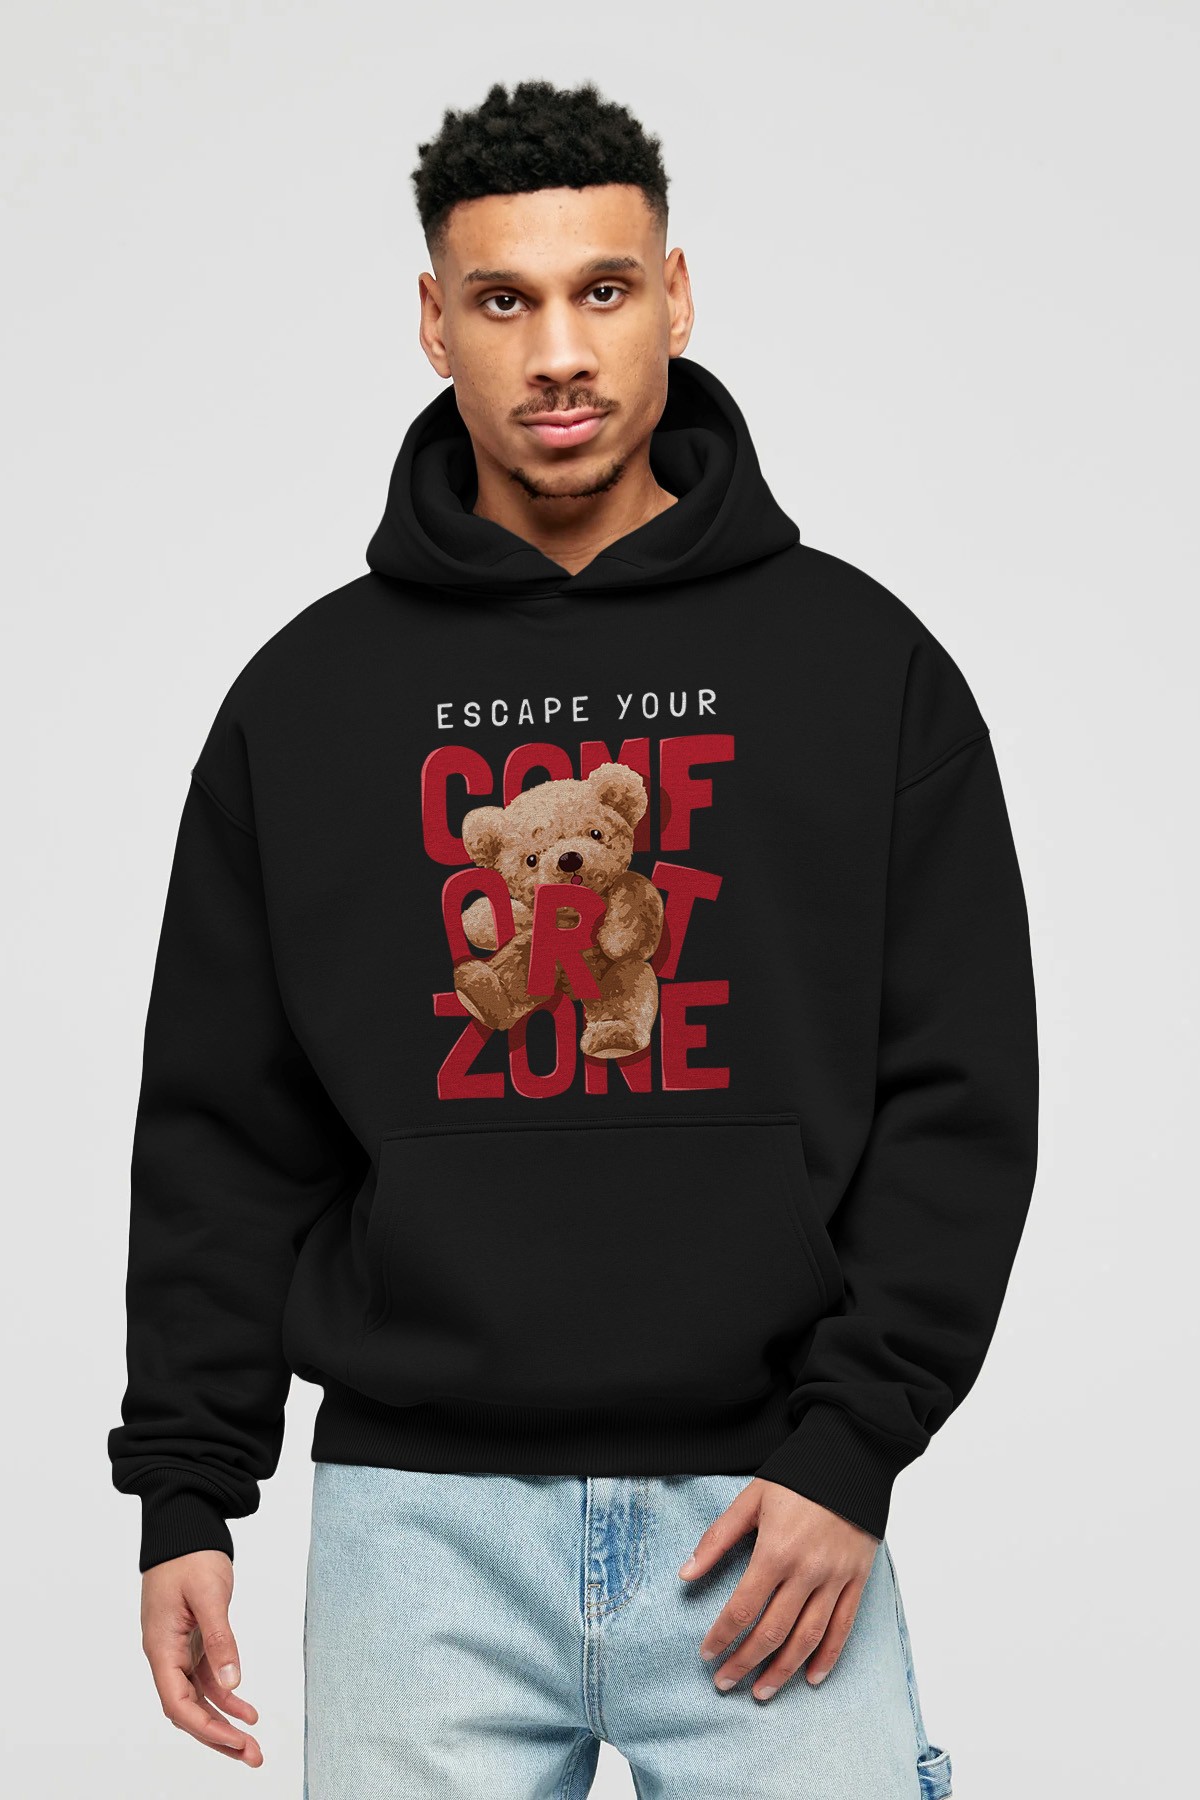 Teddy Bear Escape Comfort Zone Ön Baskılı Hoodie Oversize Kapüşonlu Sweatshirt Erkek Kadın Unisex